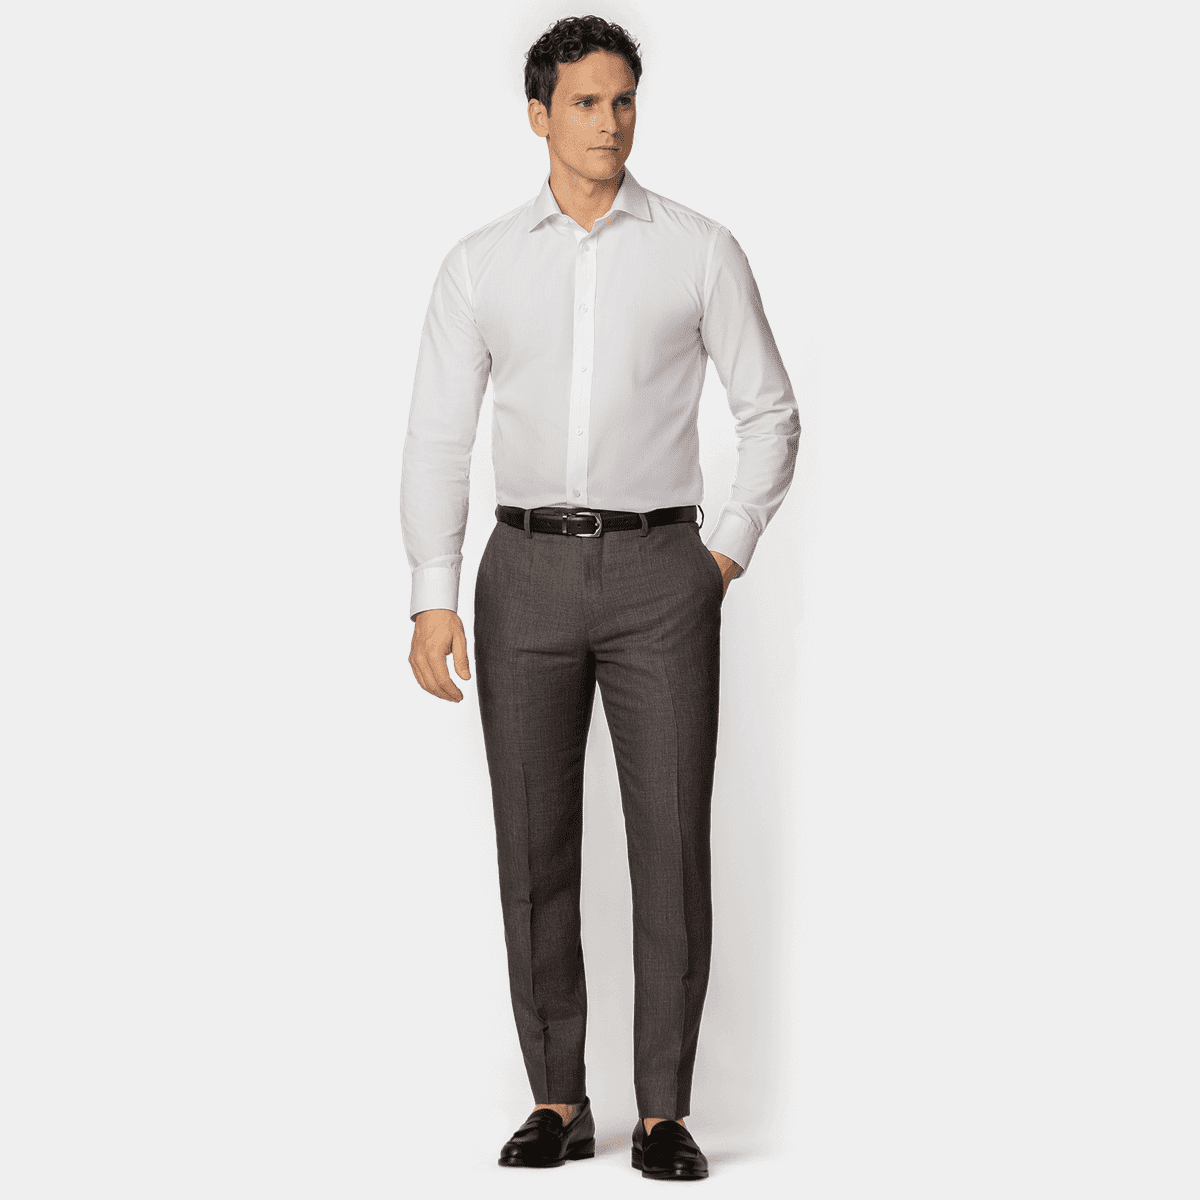 White - Linen Pants : Made To Measure Custom Jeans For Men & Women